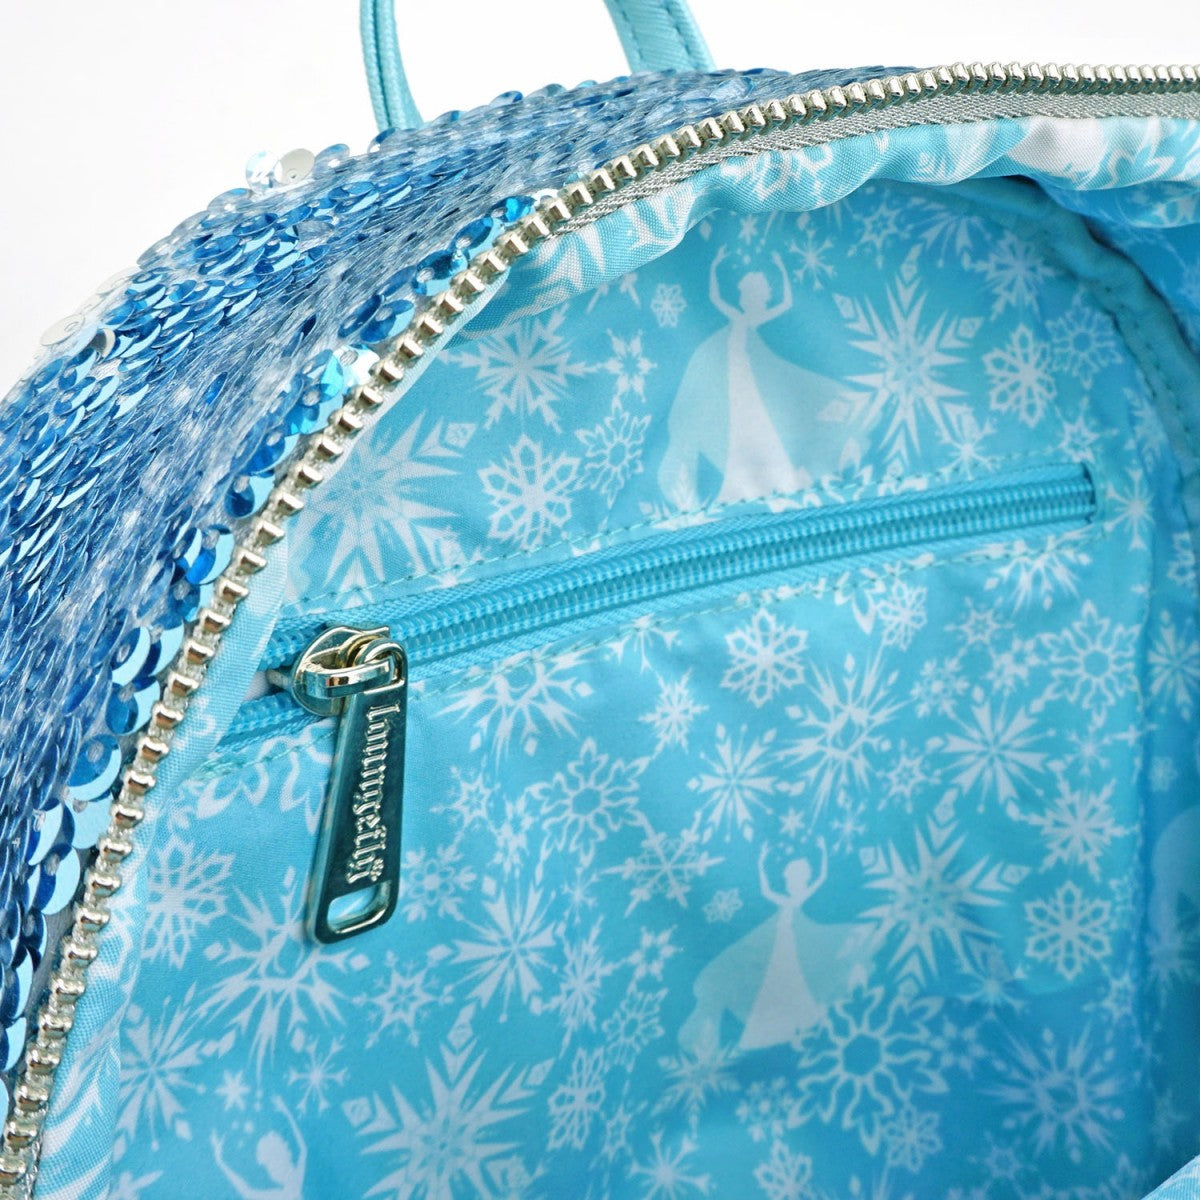 Loungefly x Disney Frozen Elsa Reversible Sequin Mini Backpack